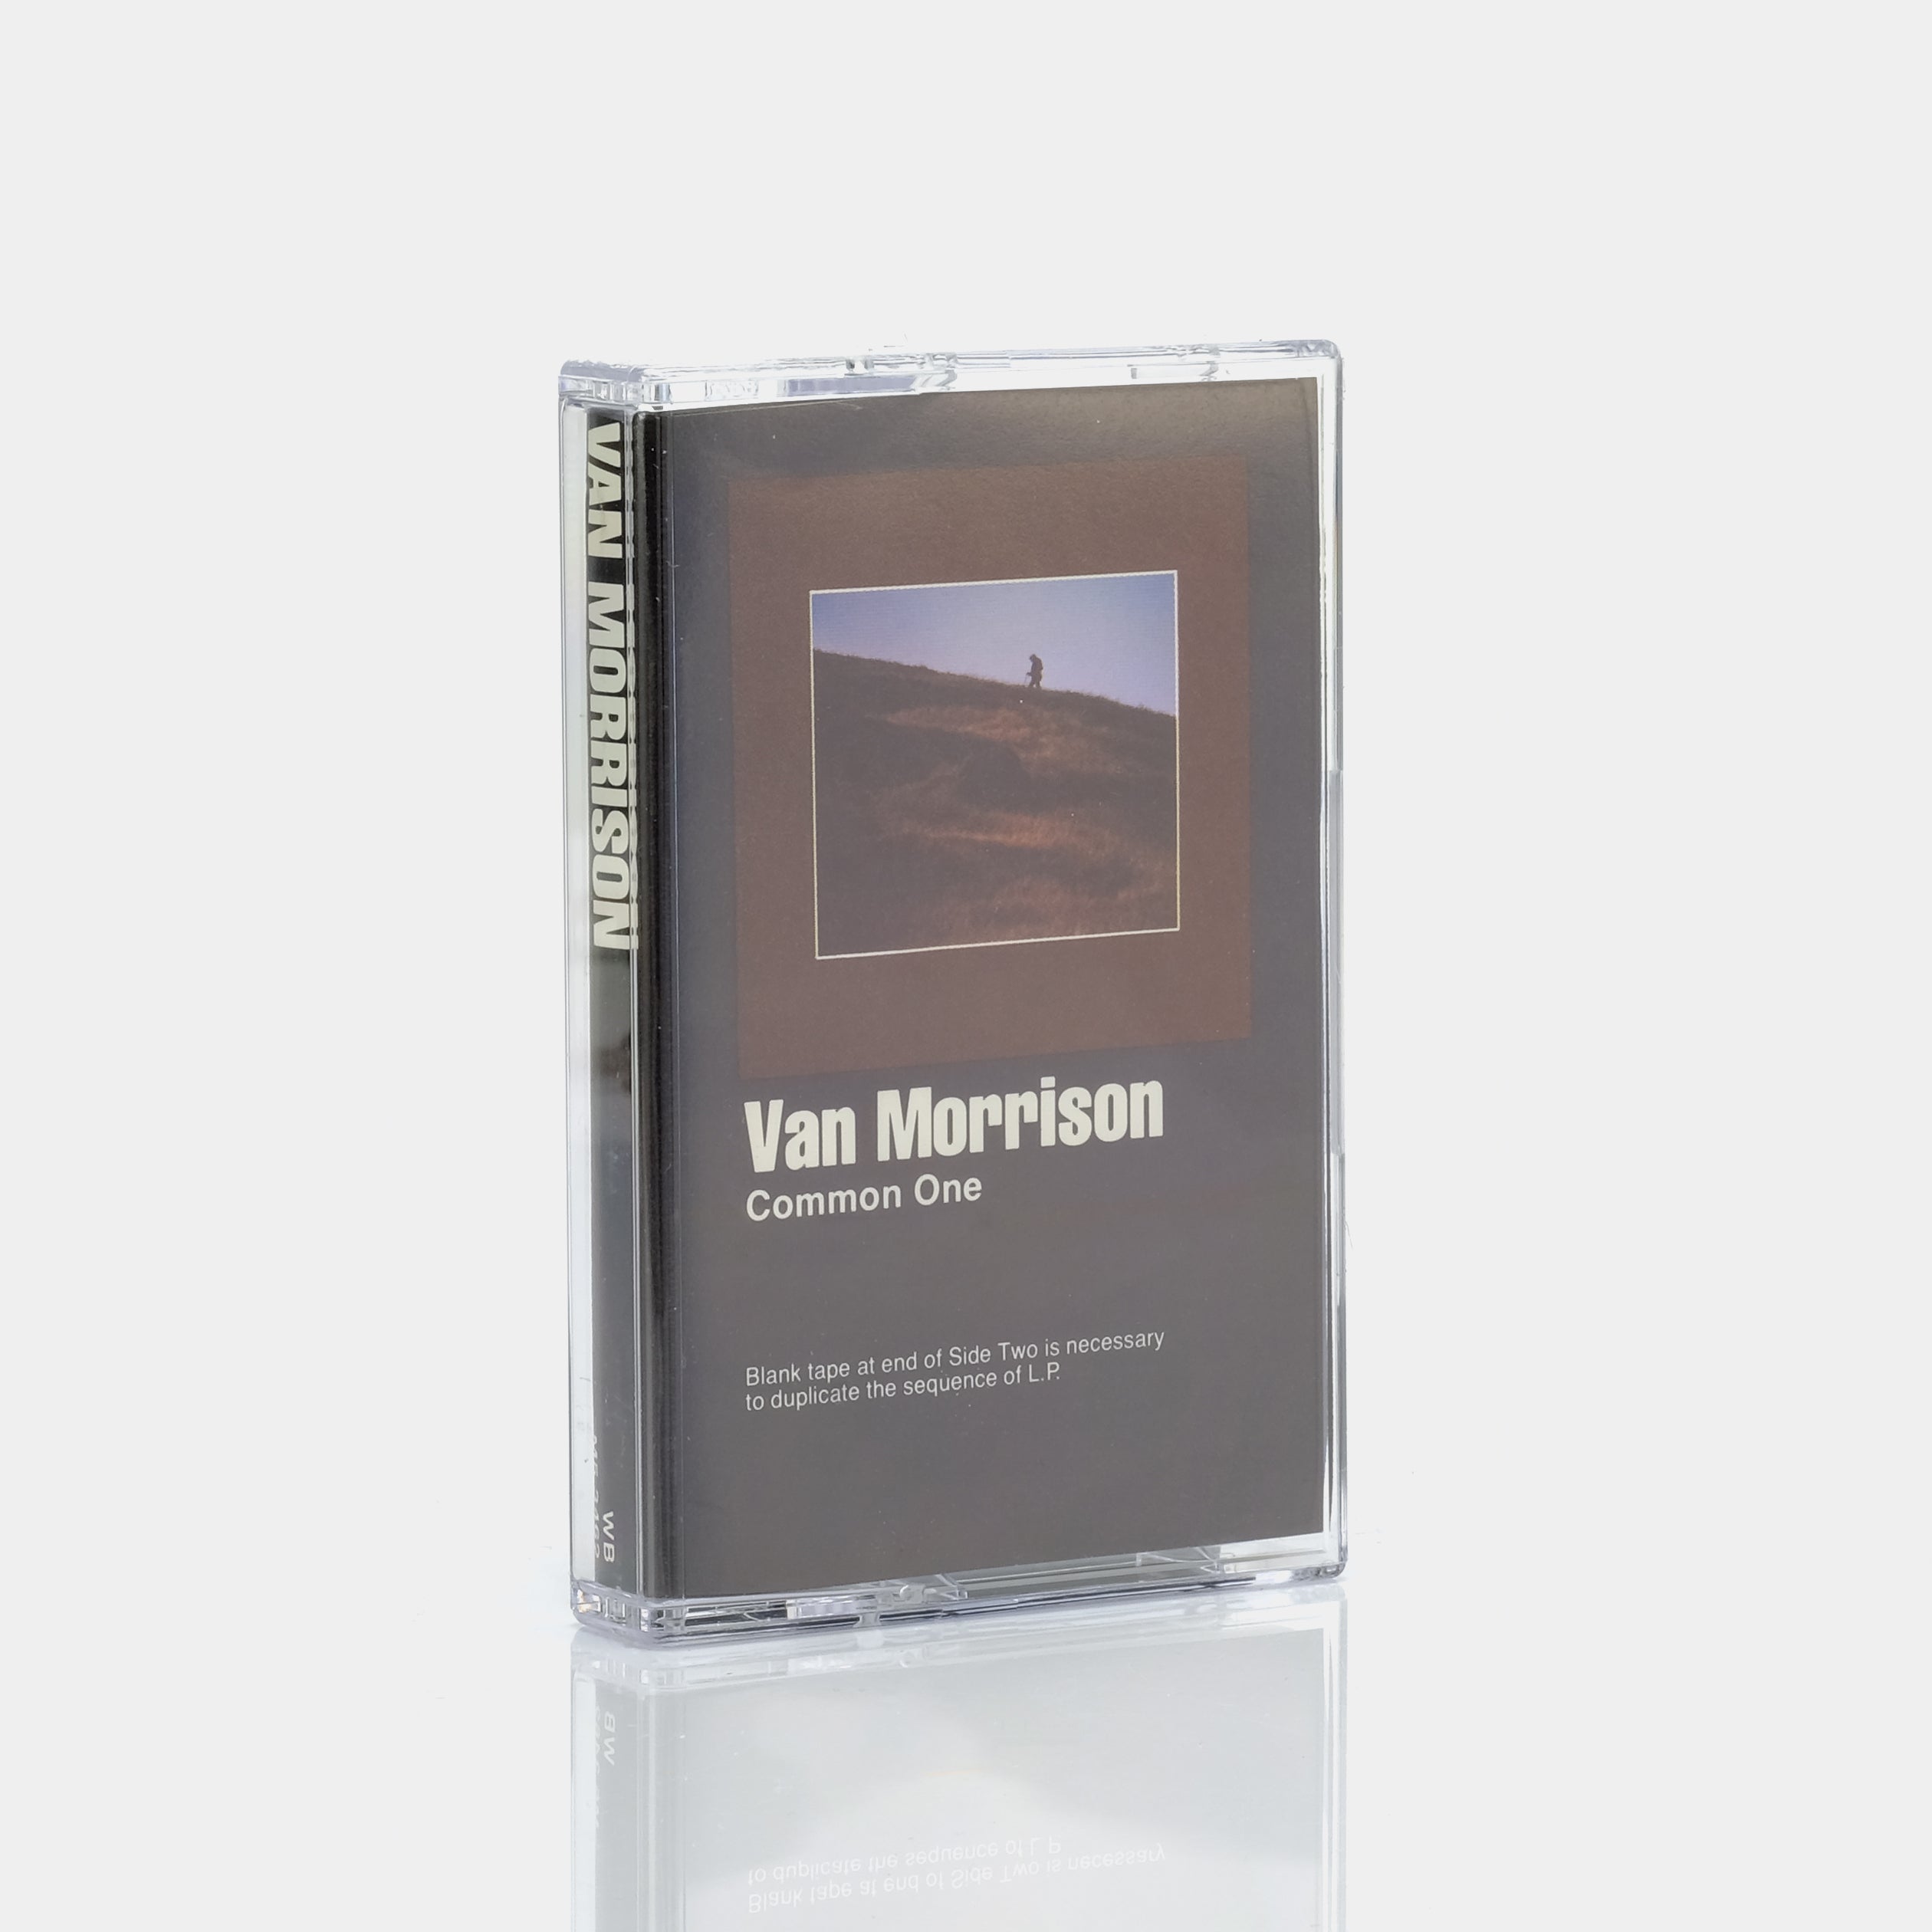 Van Morrison - Common One Cassette Tape